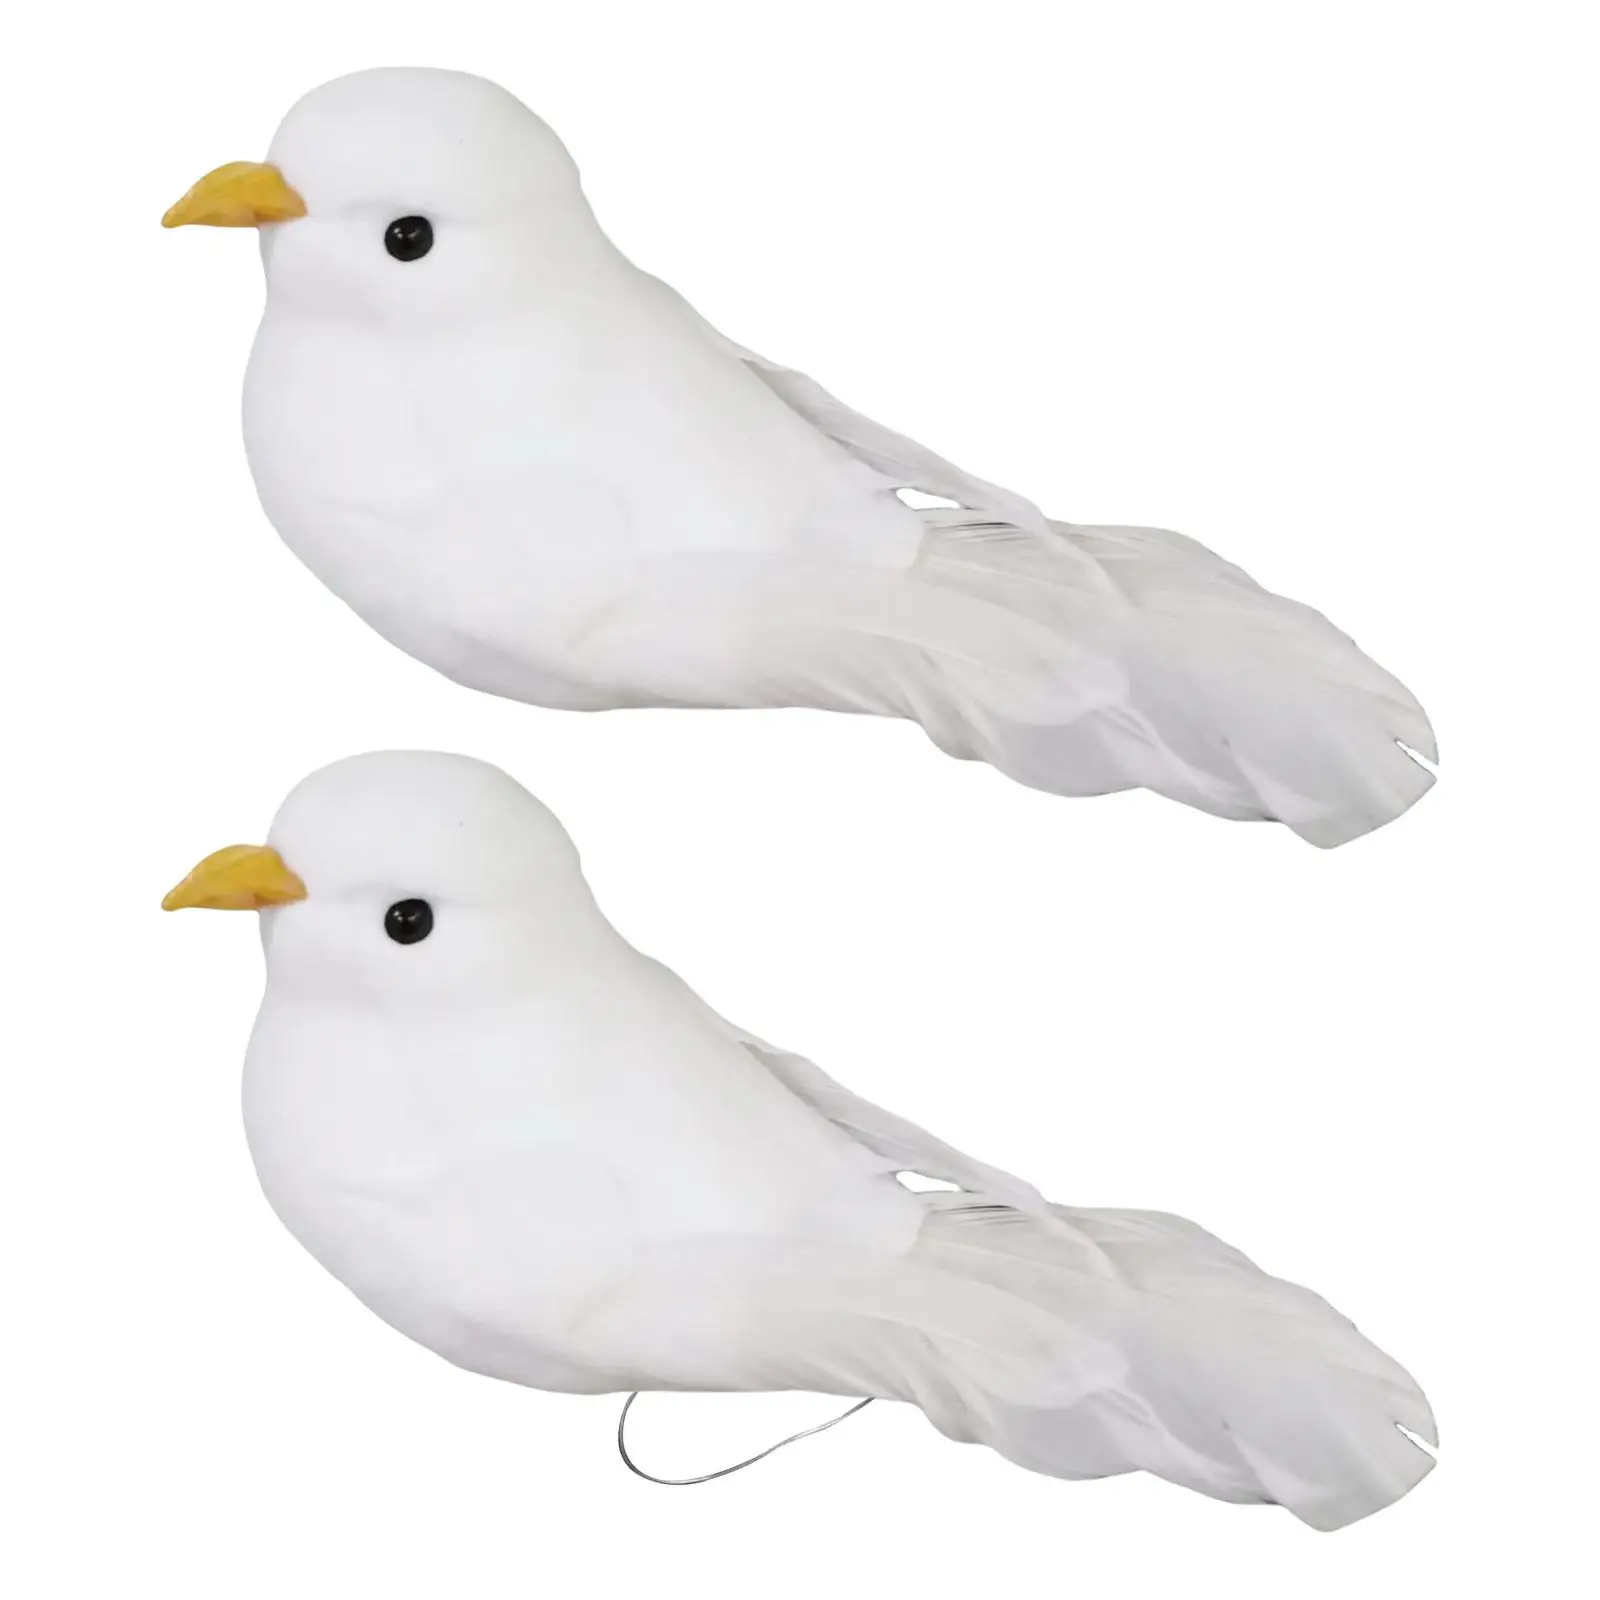 

Artificial Simulation Foam Bird Lifelike DIY Crafts Bird Model Simulation Foam Birds for Fairy Garden Easter Wedding Decoration